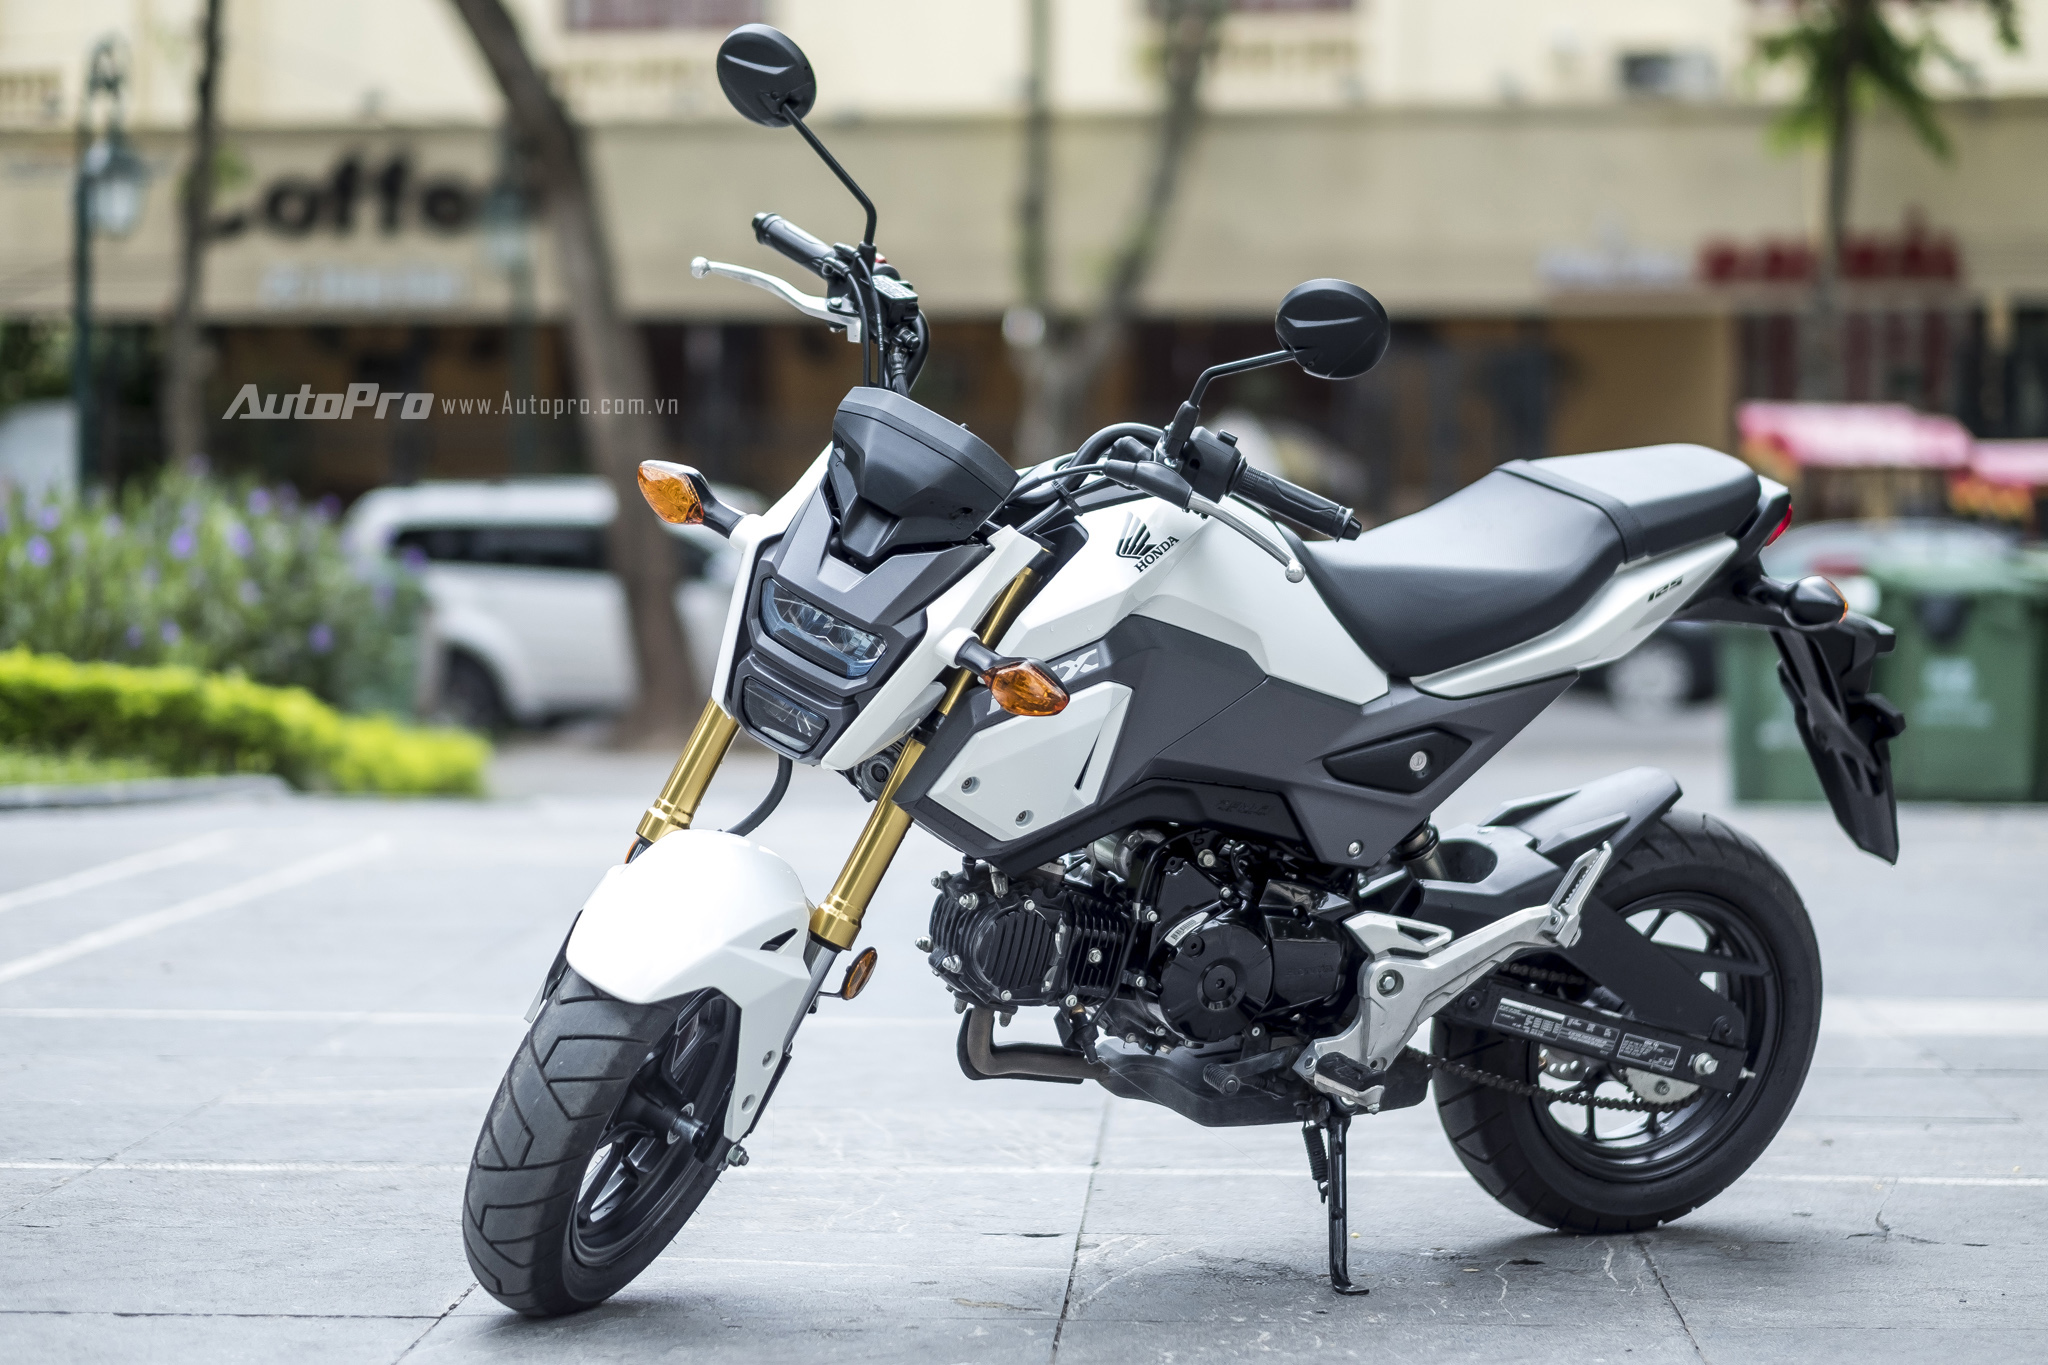 Xe côn tay cổ điển Honda CG125 giá 36 triệu đồng tại Việt Nam